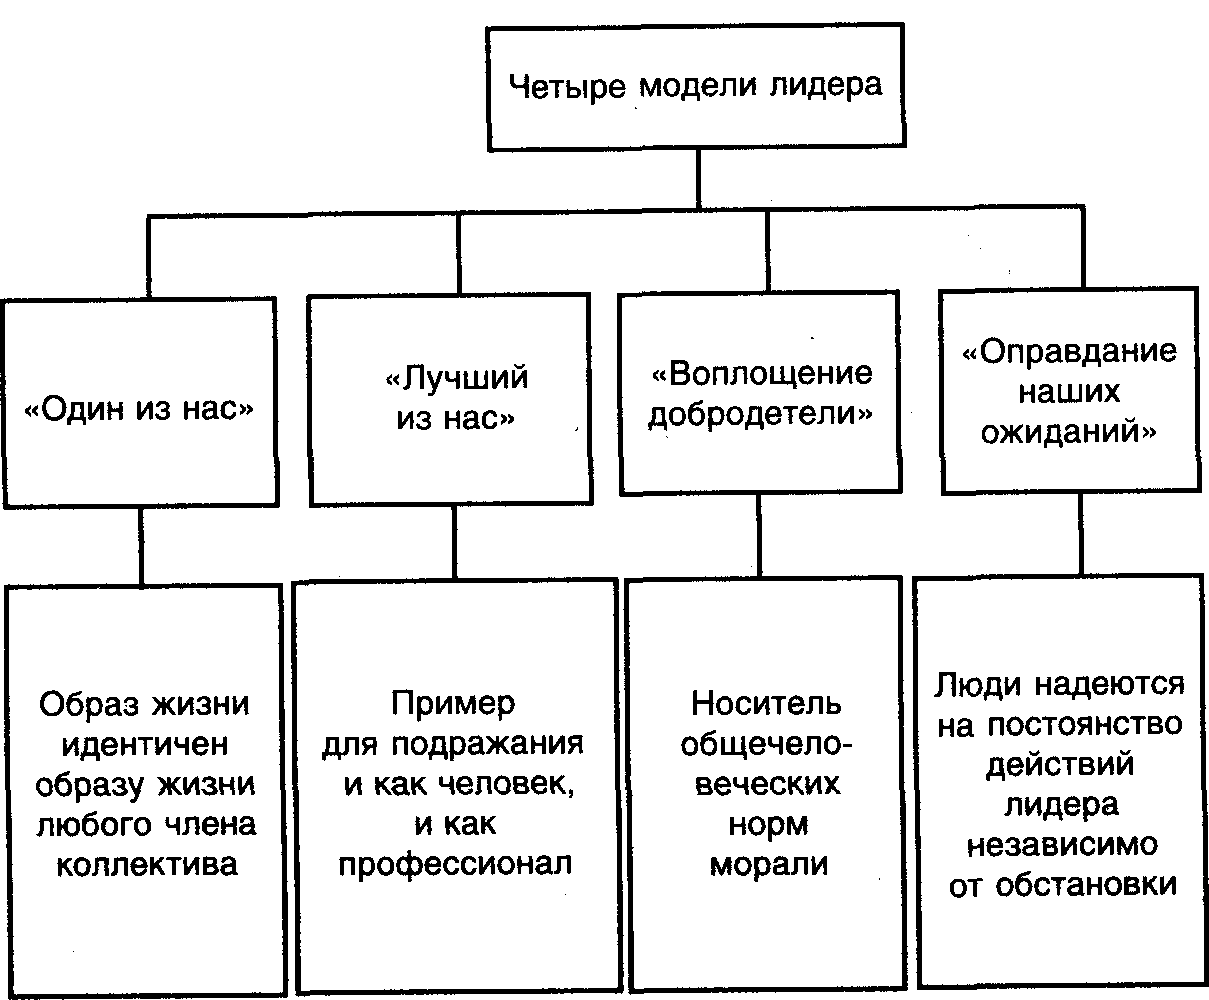 Структура группы лидера